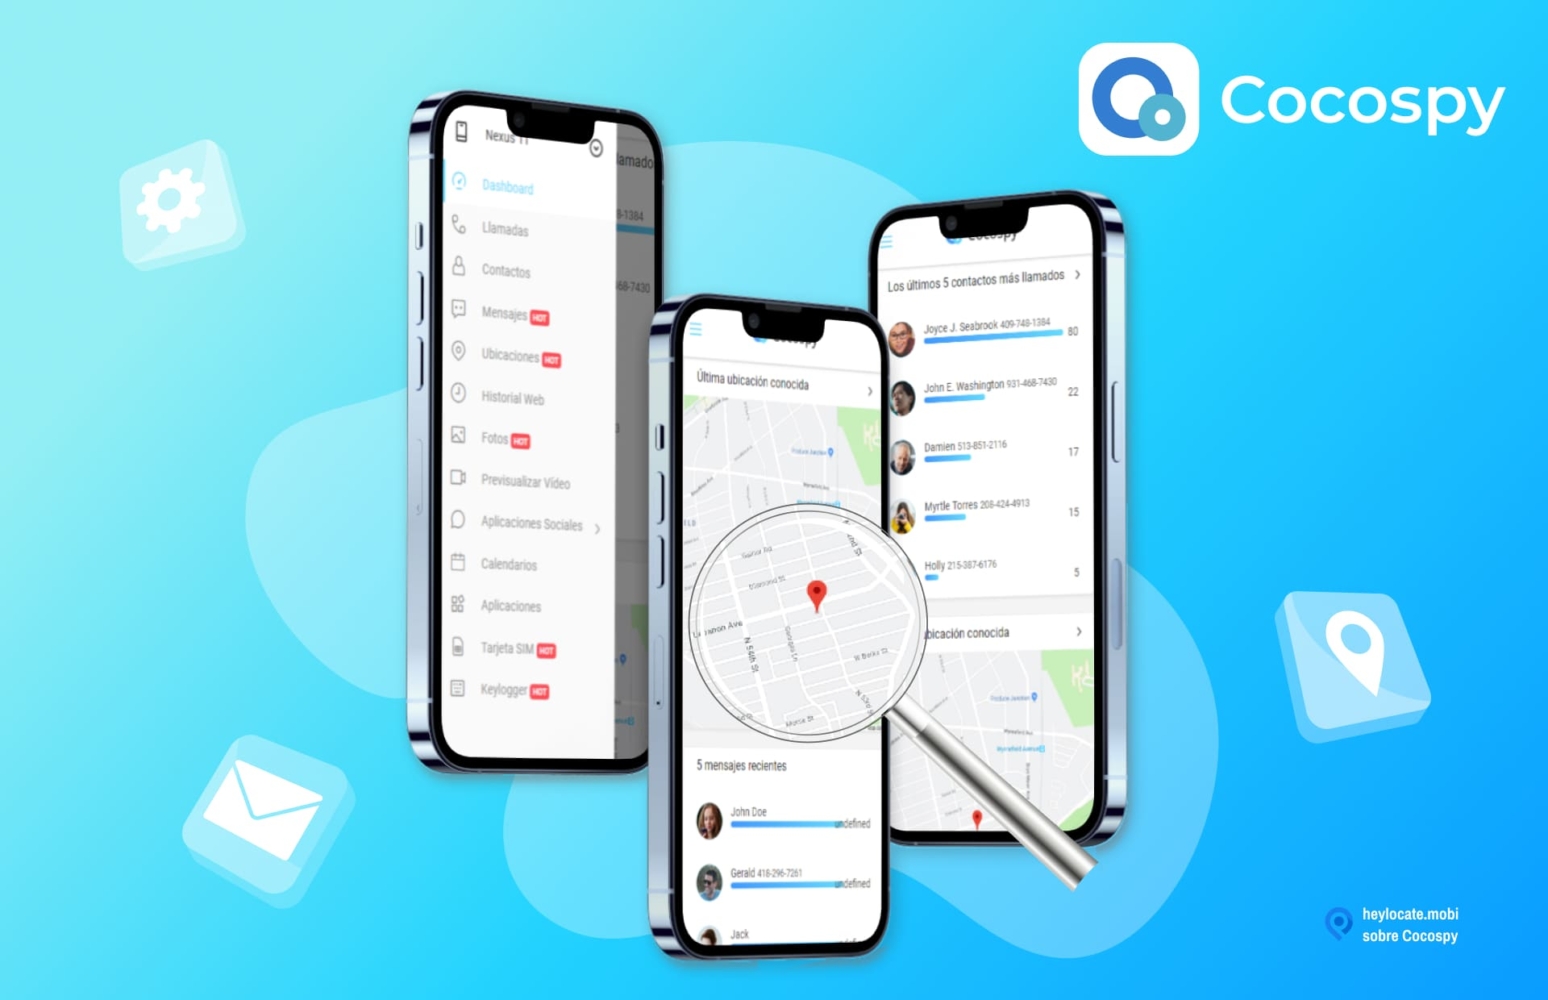 Imagen promocional de Cocospy que muestra la interfaz de la aplicación en smartphones. La interfaz incluye opciones como llamadas, mensajes, ubicaciones y un mapa que muestra una localización.